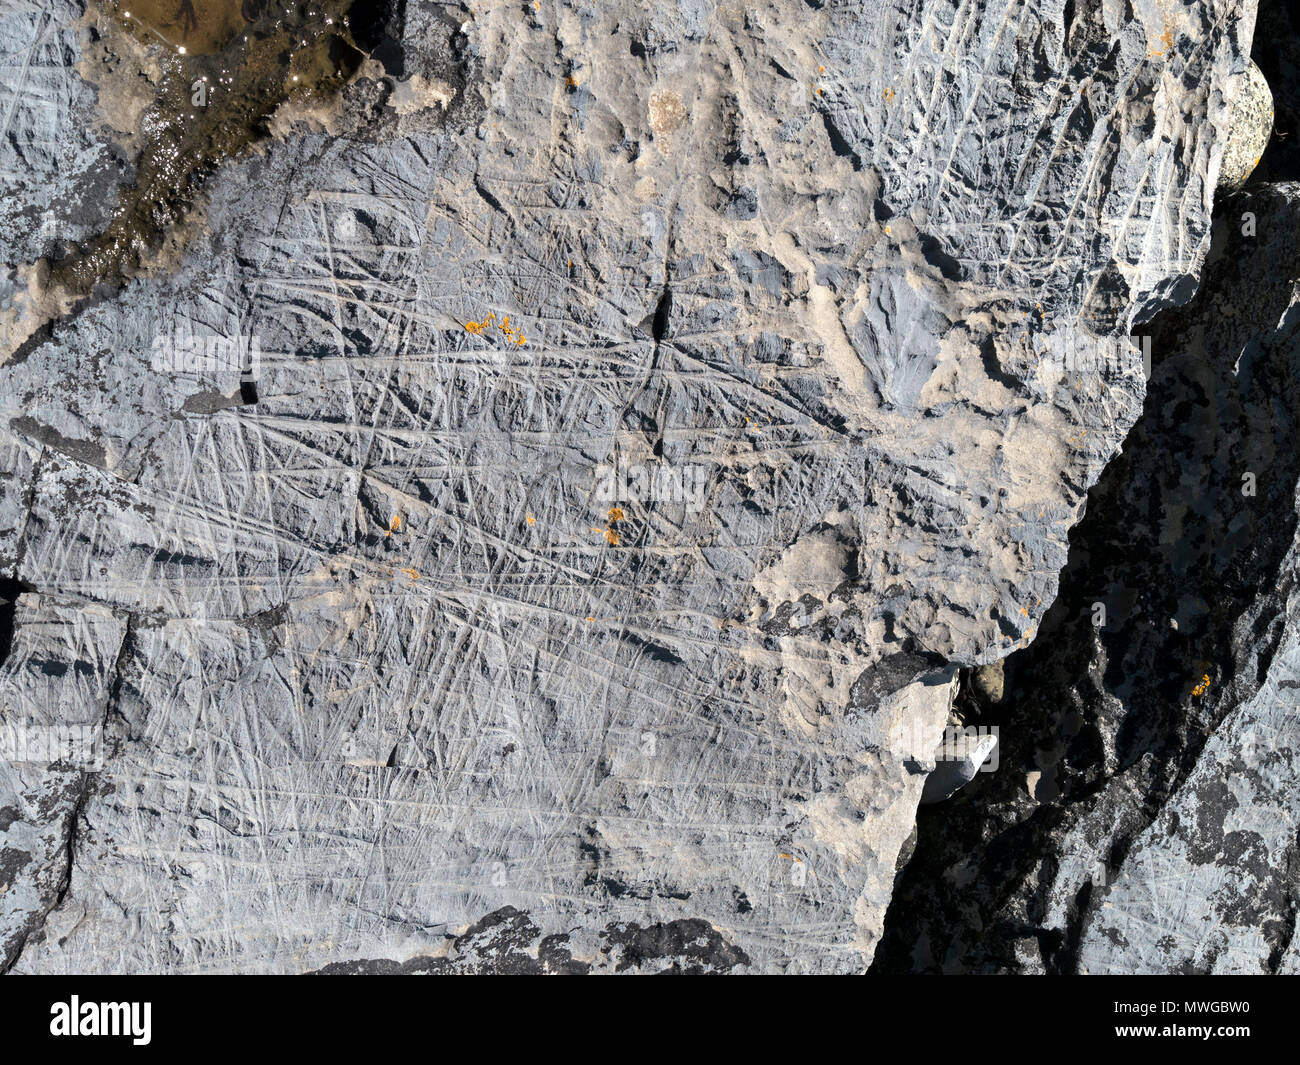 Acercamiento del multi-direccional de hielo a la deriva marcas de abrasión mudstone rock se muestra en Alamy imagen2, Glen Scaladal MWGBW Bay, Isla de Skye, Escocia, Reino Unido Foto de stock